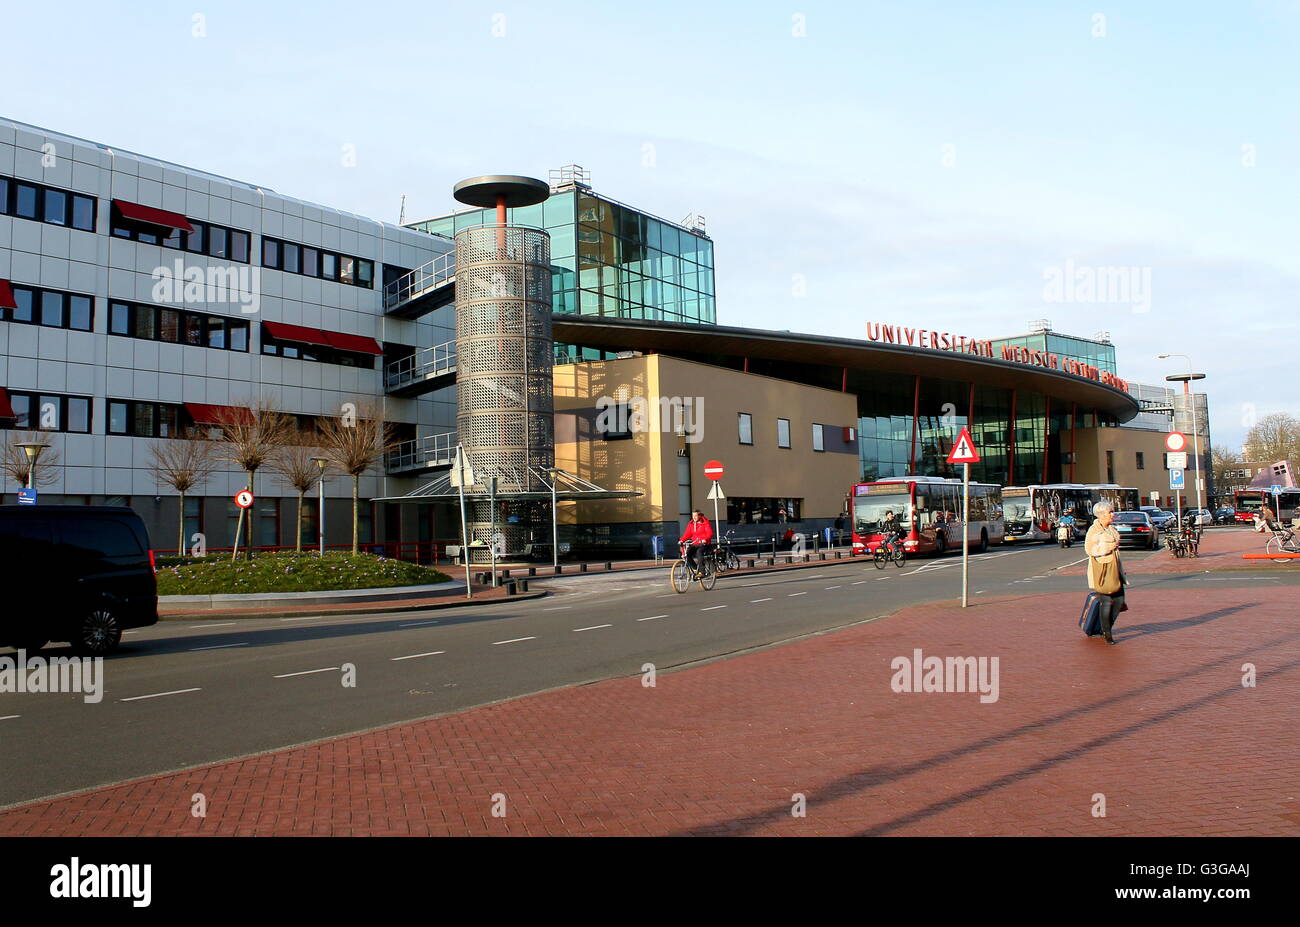 Main Entrance of the  University Medical Center Groningen (UMCG Hospital), Hanzeplein, Groningen, Netherlands Stock Photo